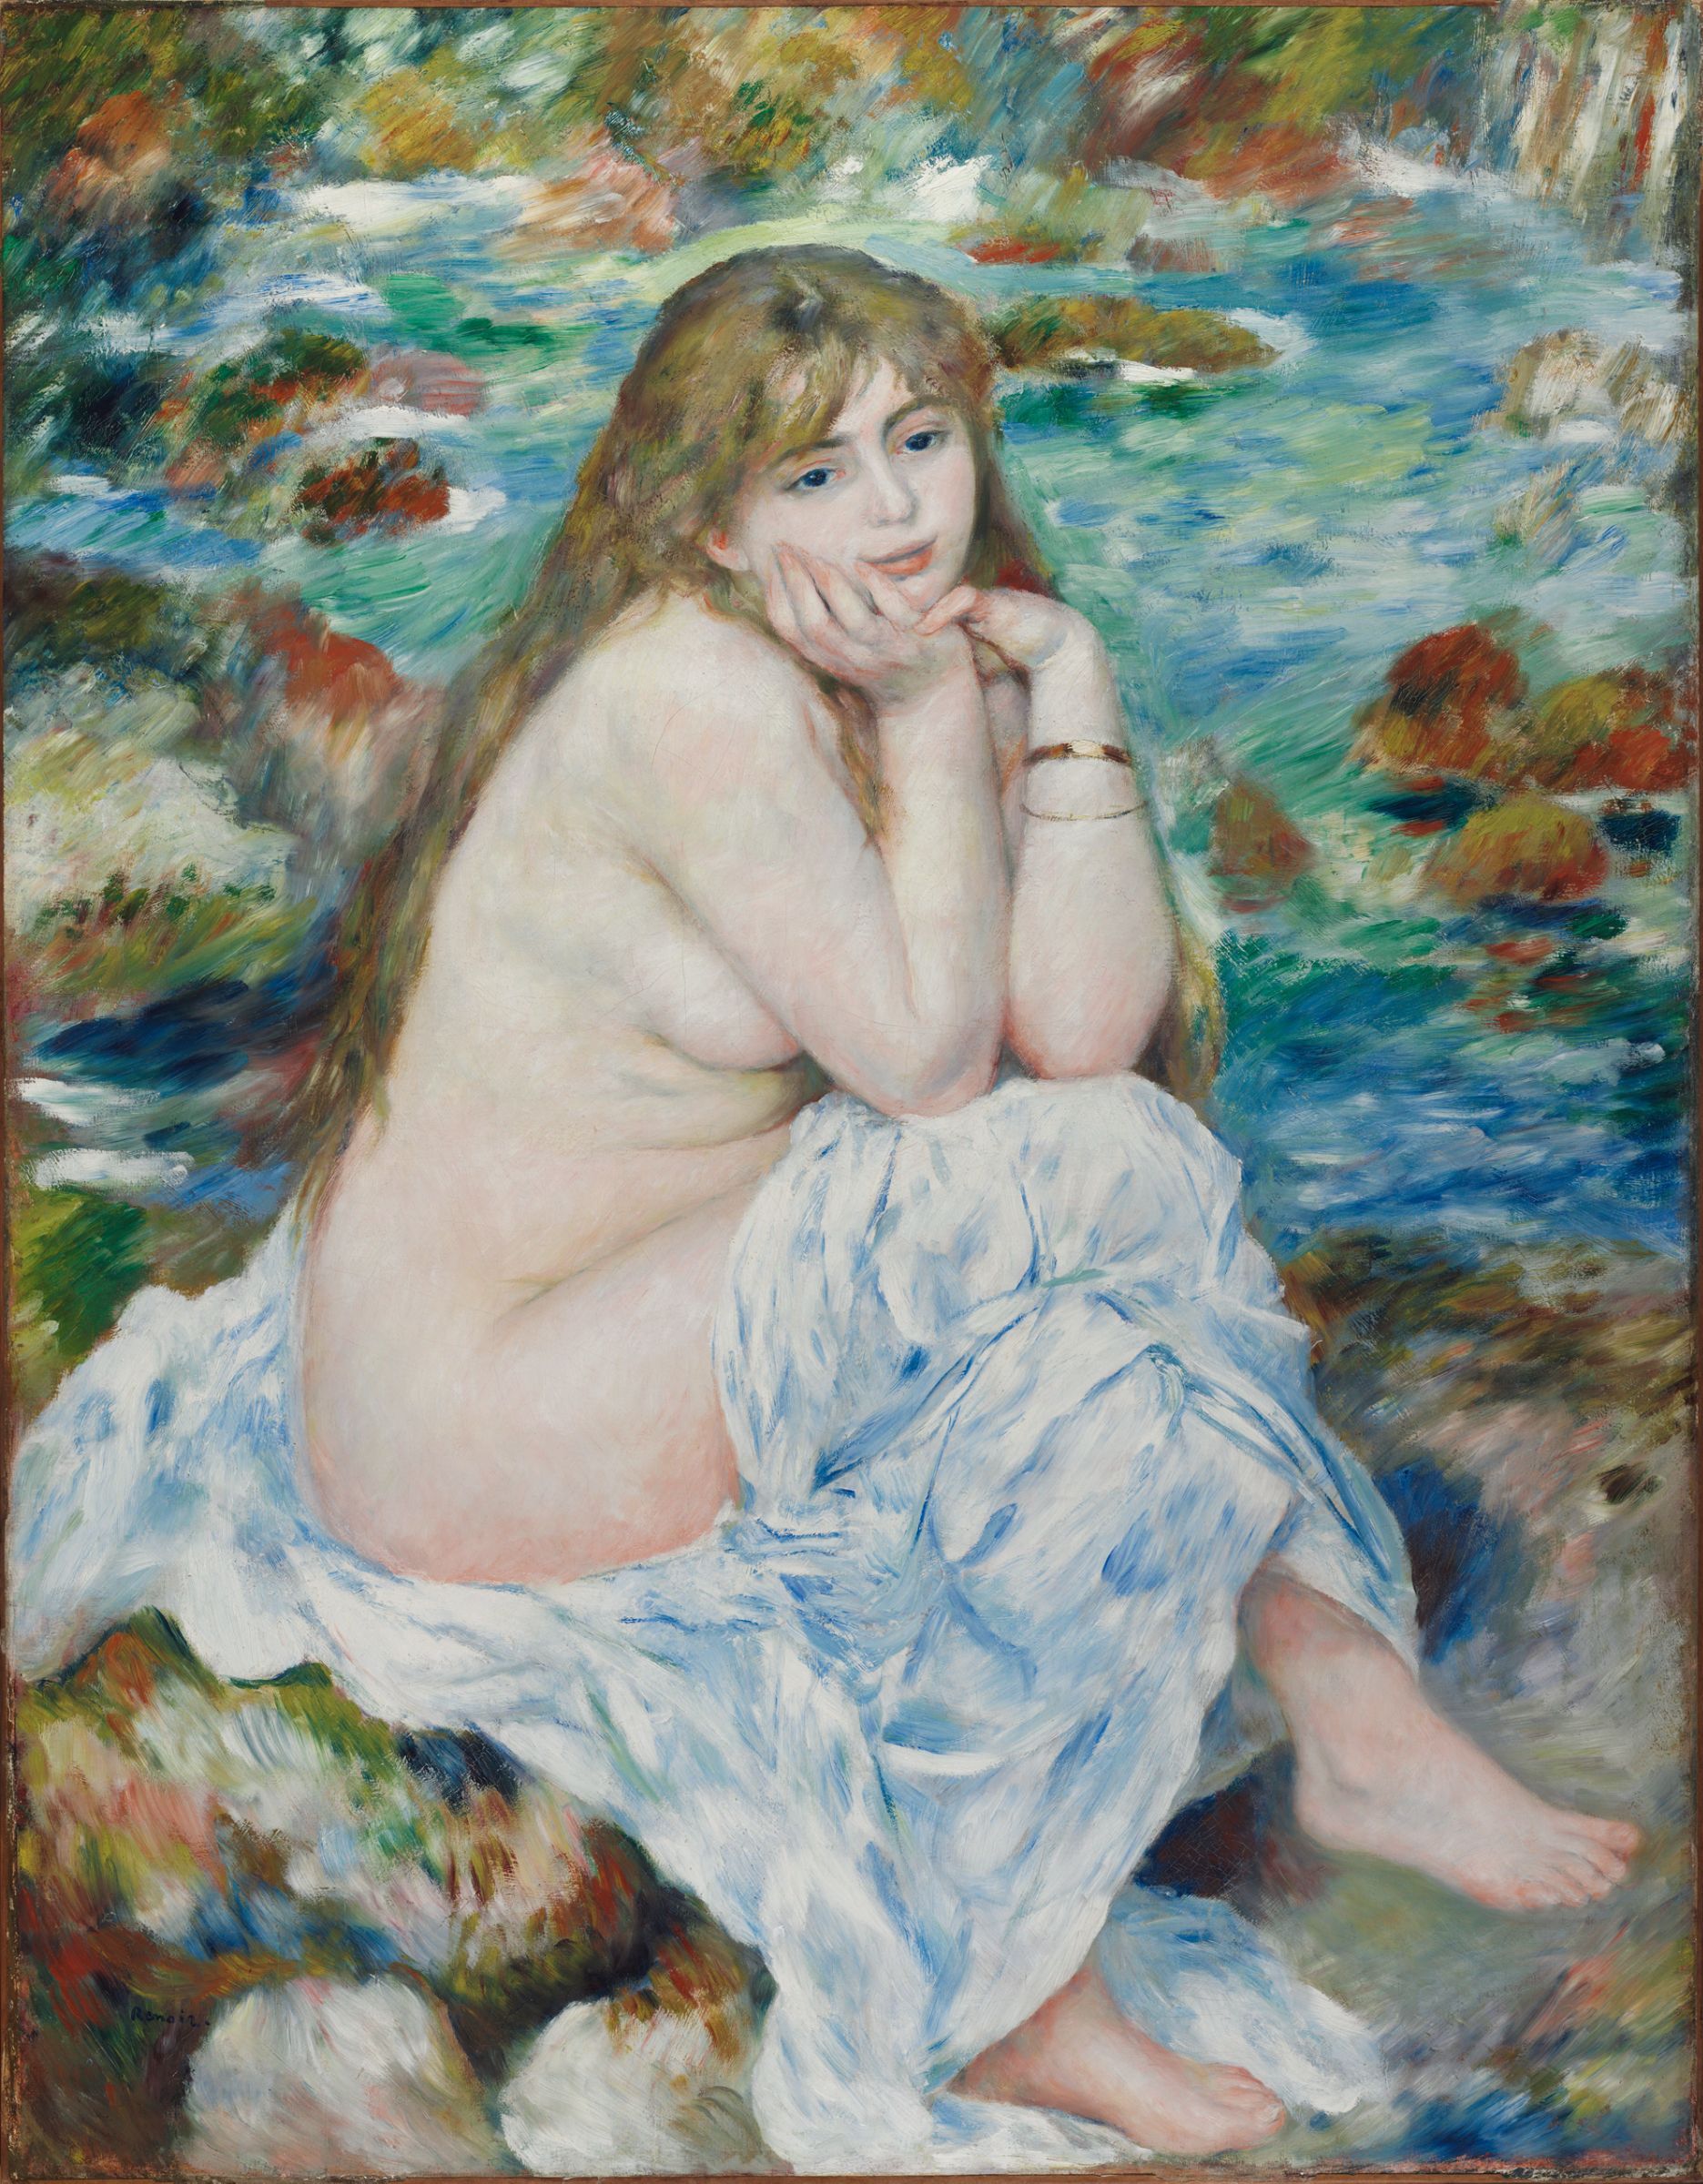 座って水浴びをする女性 by Pierre-Auguste Renoir - 1883-1884年頃 - 93.0 x 119.7 cm 